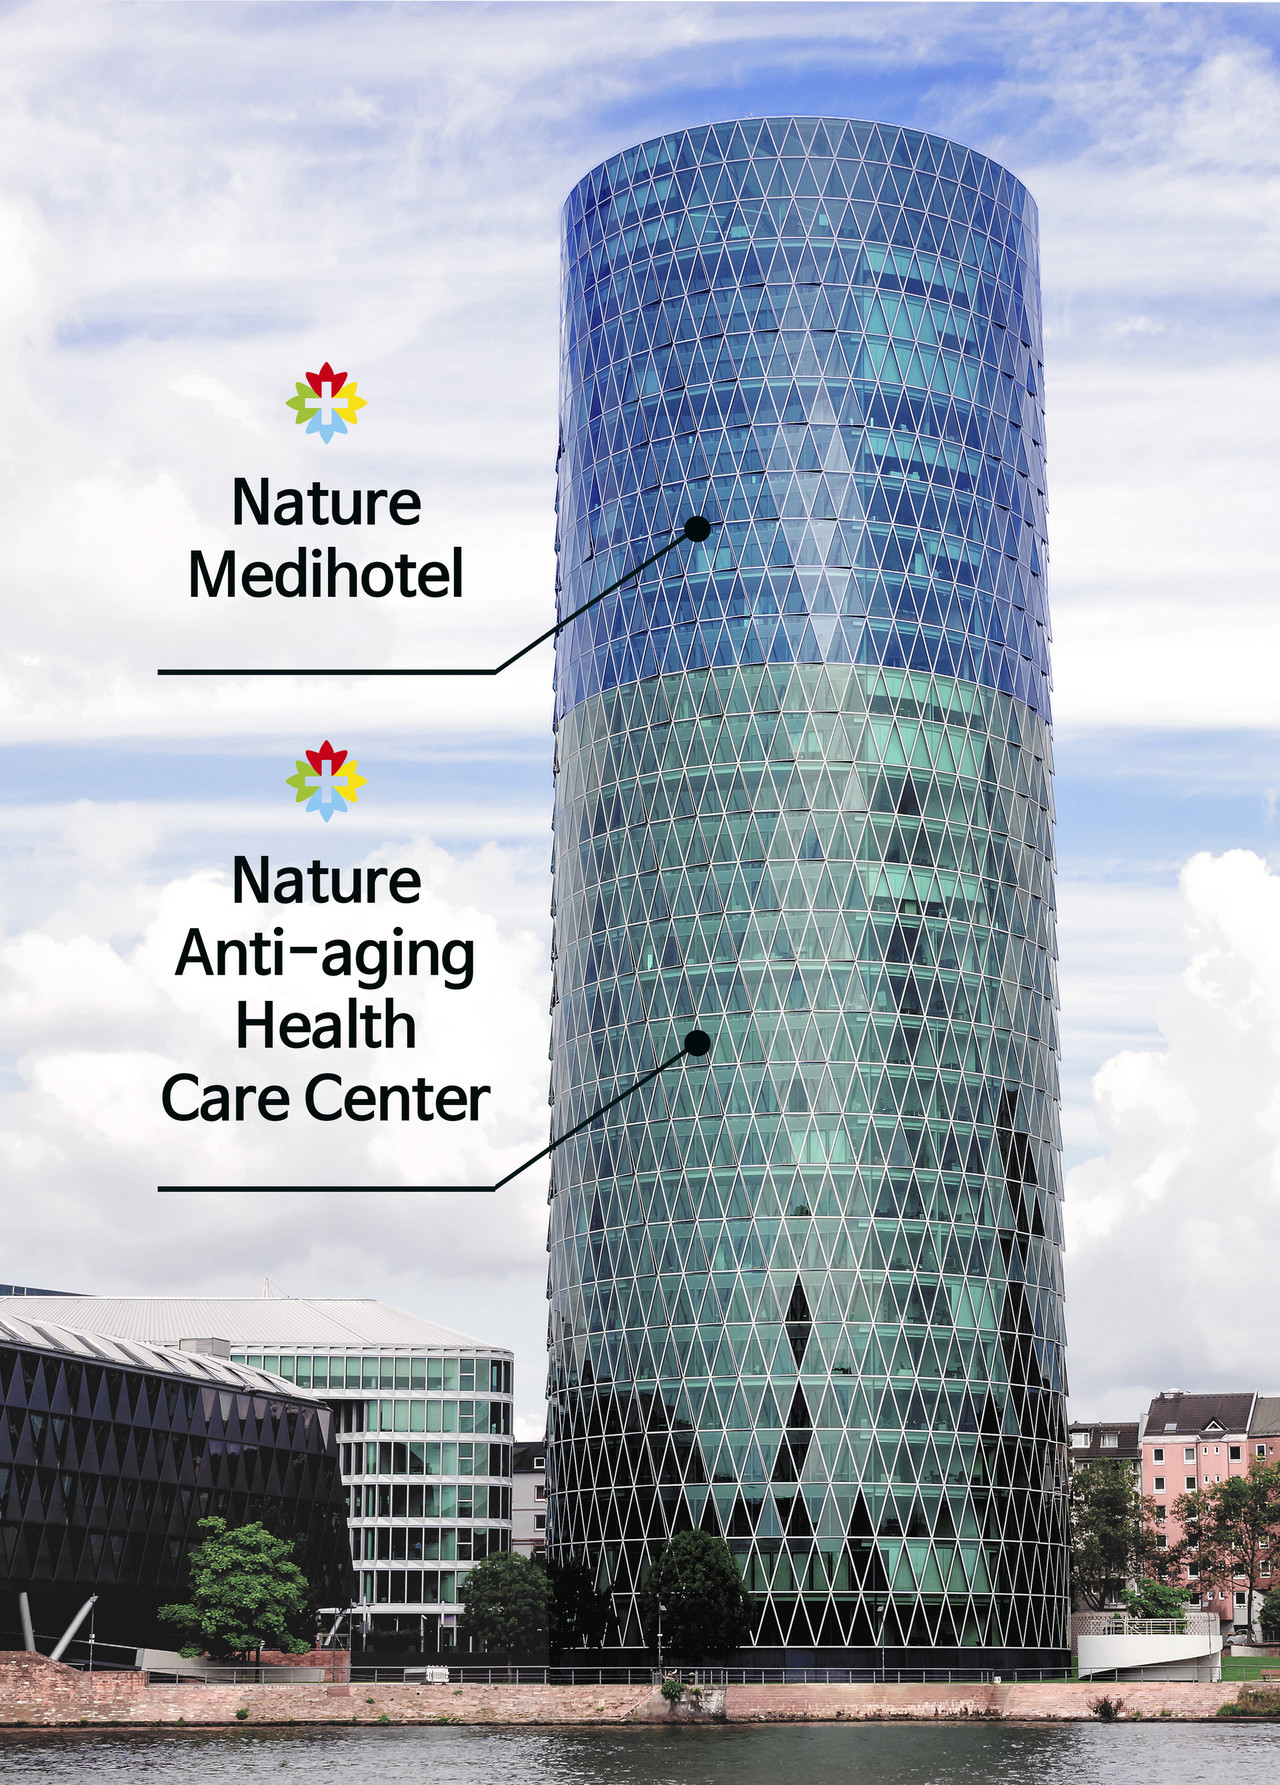 빌딩 상부층은 호텔이며, 하부층은 종합병원 항노화헬스케어센터로 구성